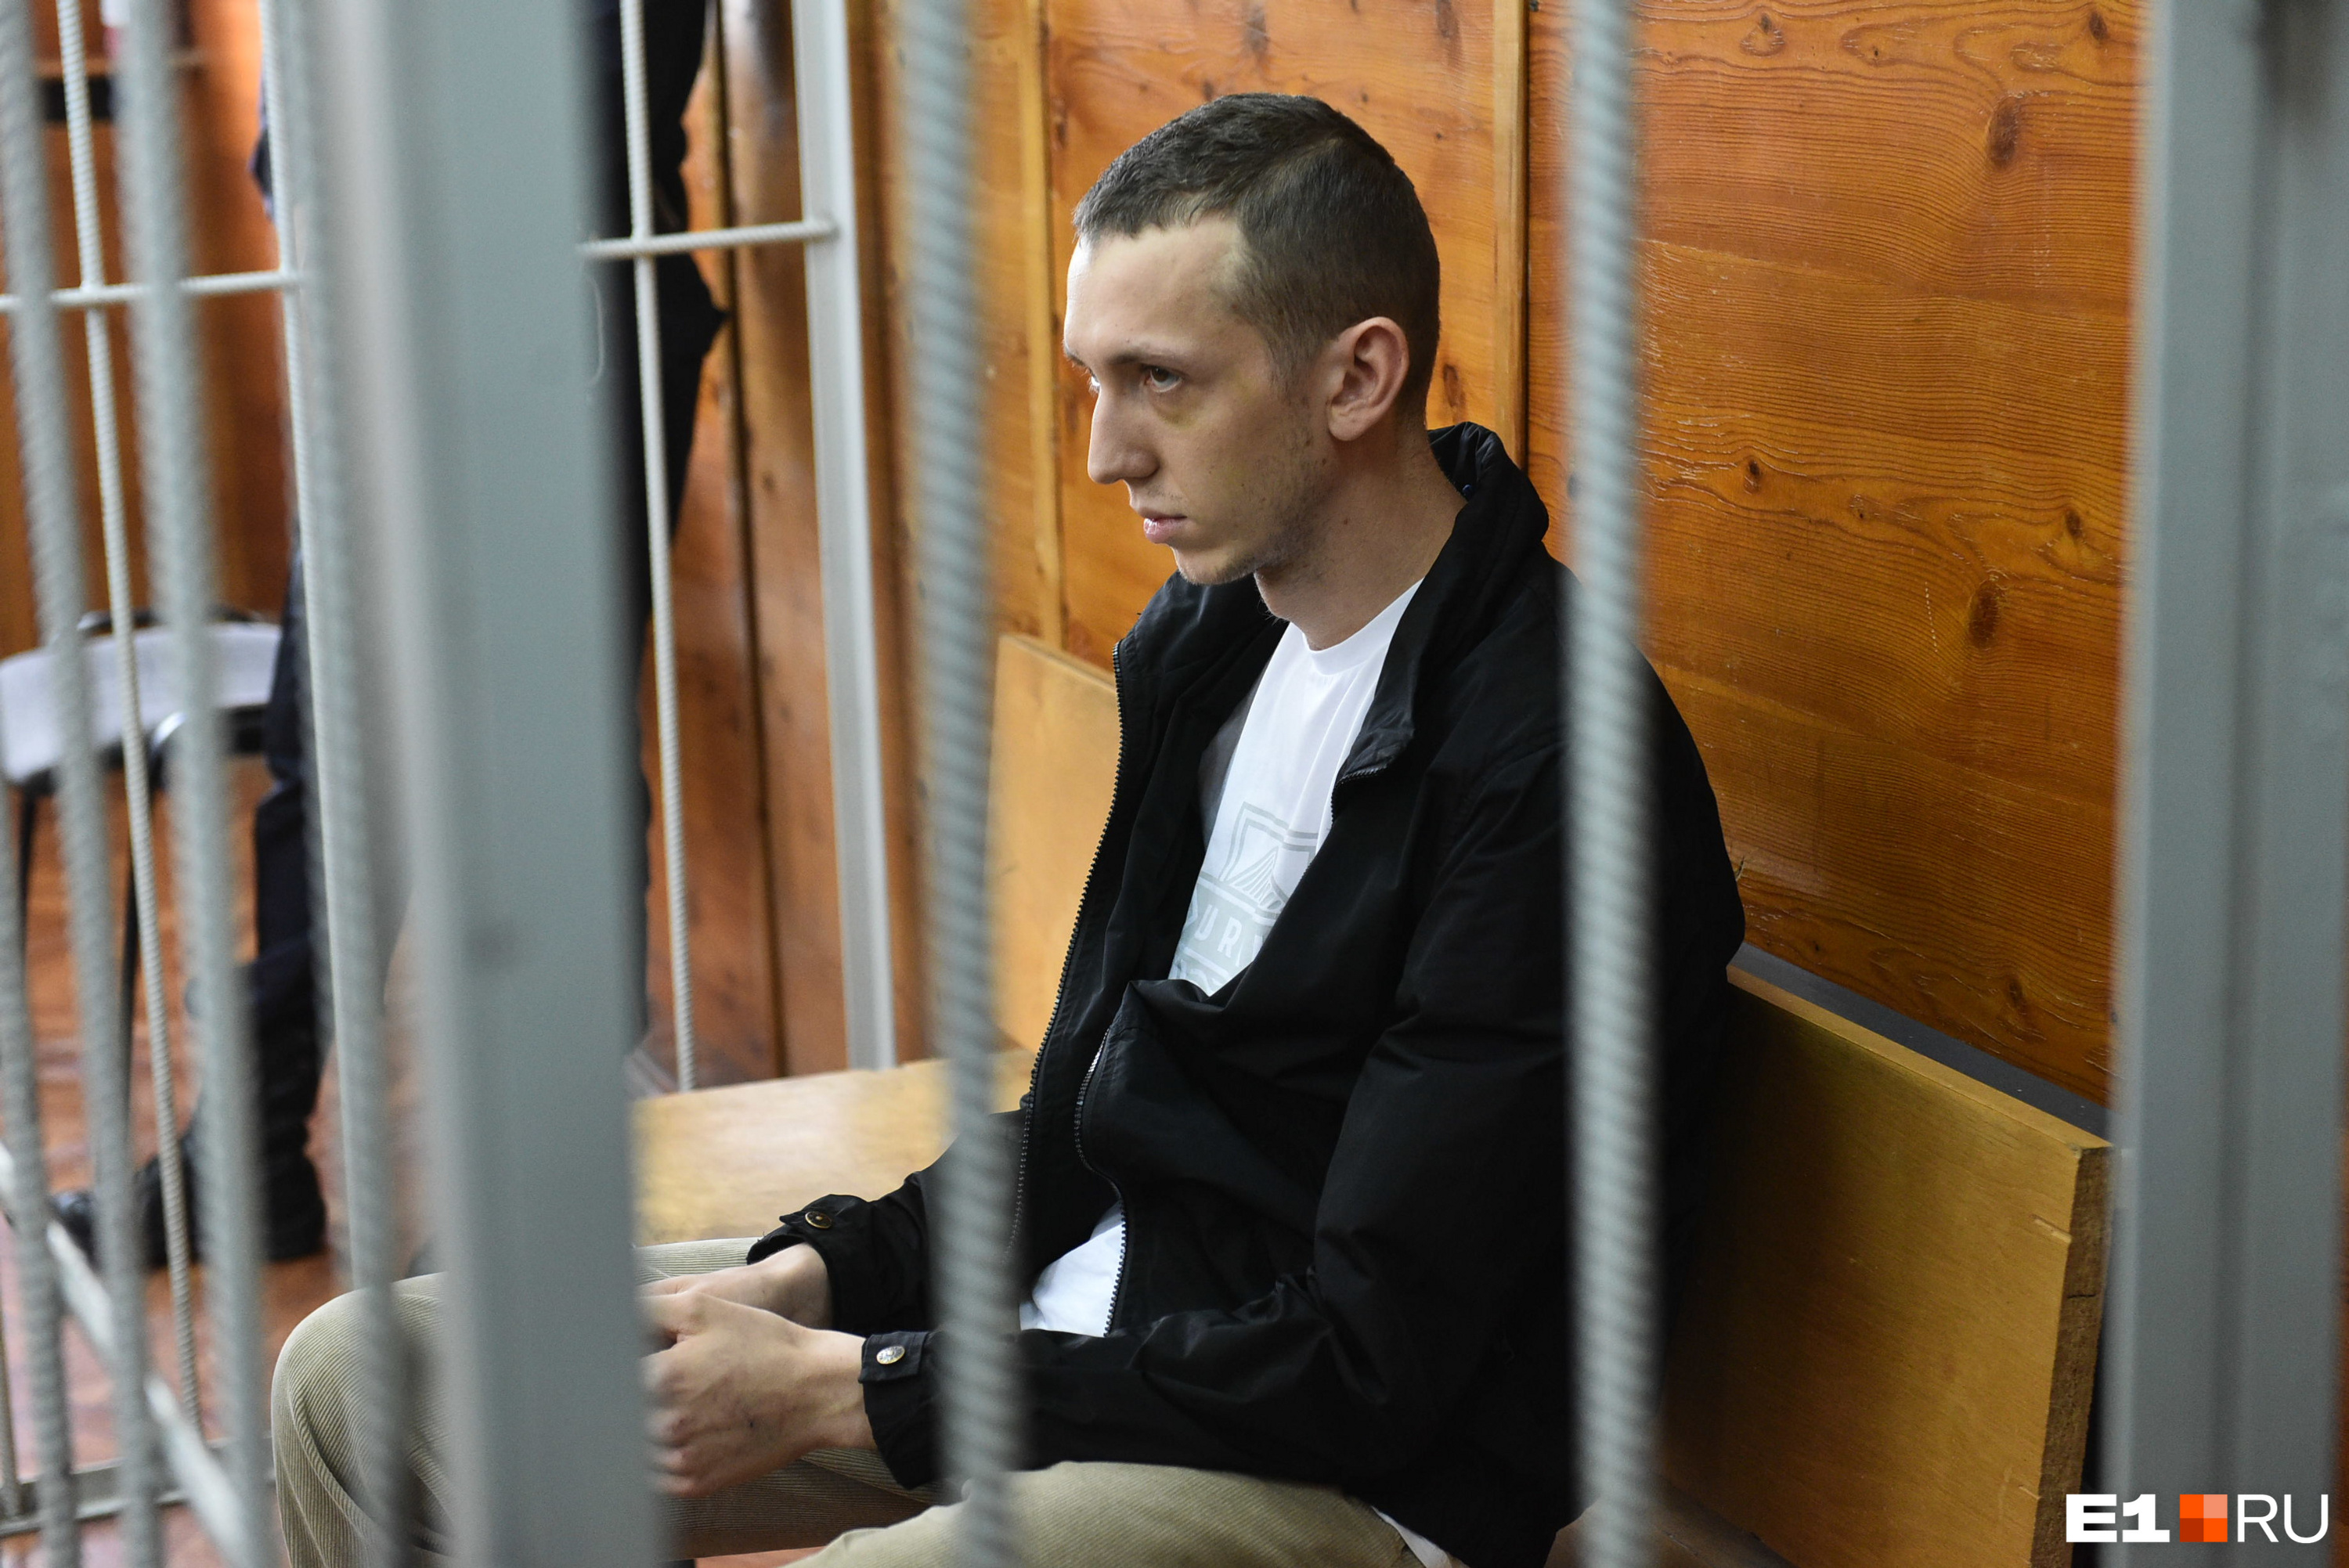 Васильеву сейчас грозит до 7 лет лишения свободы